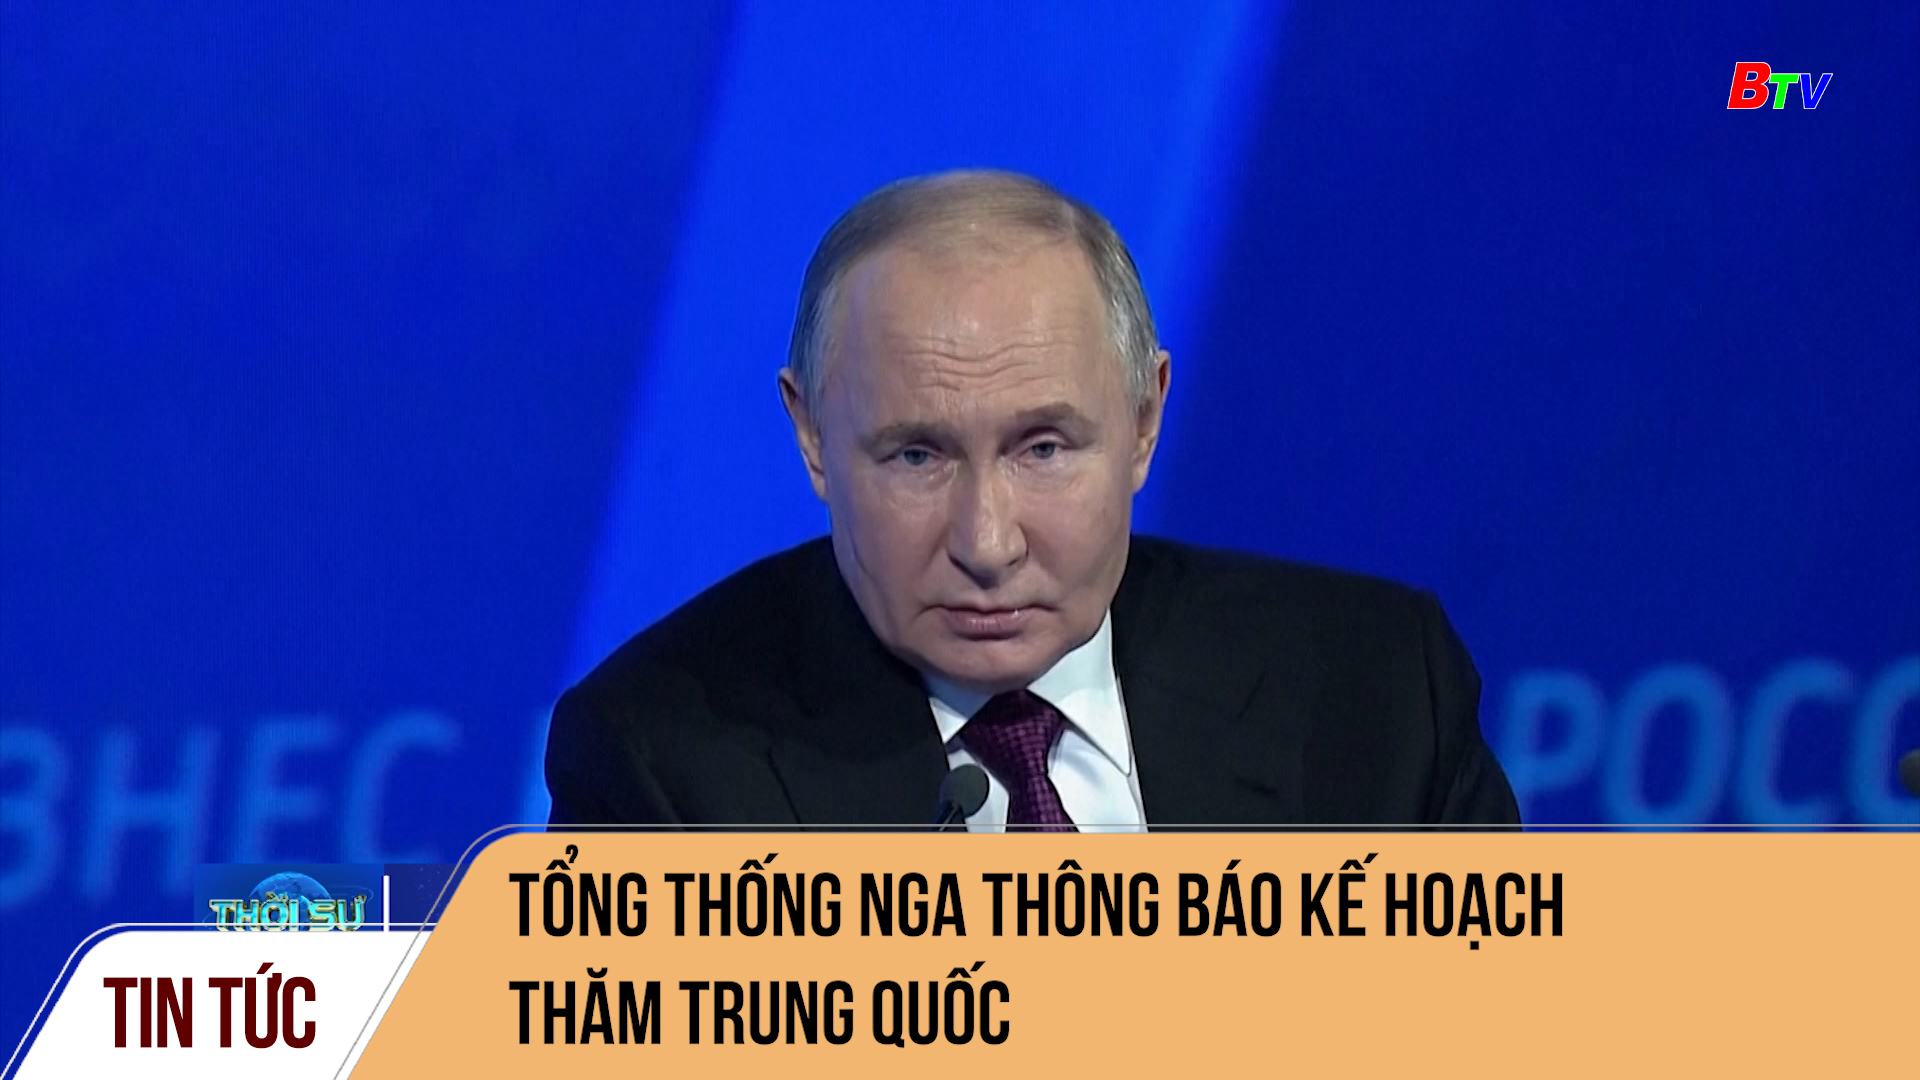 Tổng thống Nga thông báo kế hoạch thăm Trung Quốc  